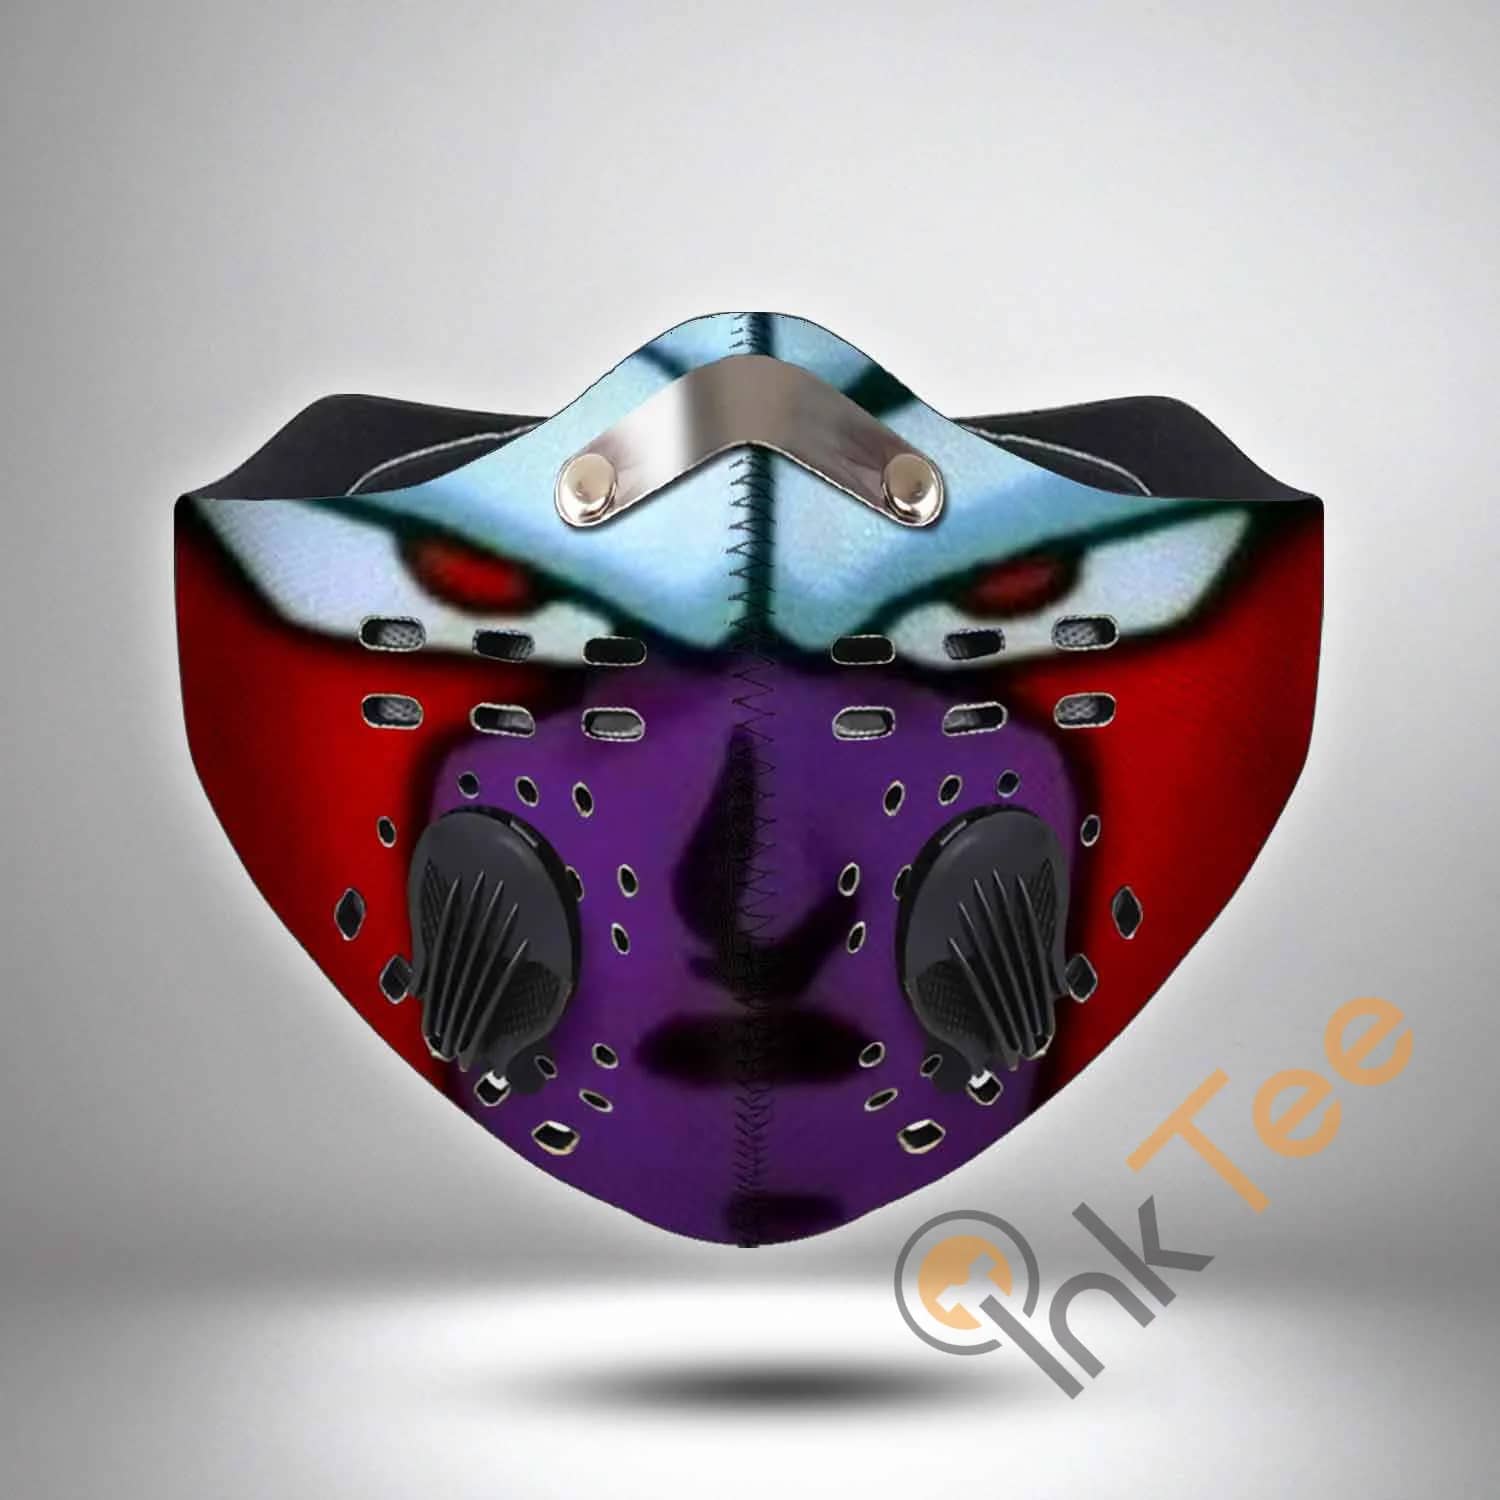 Cooler Filter Activated Carbon Pm 2.5 Fm Sku 3475 Face Mask